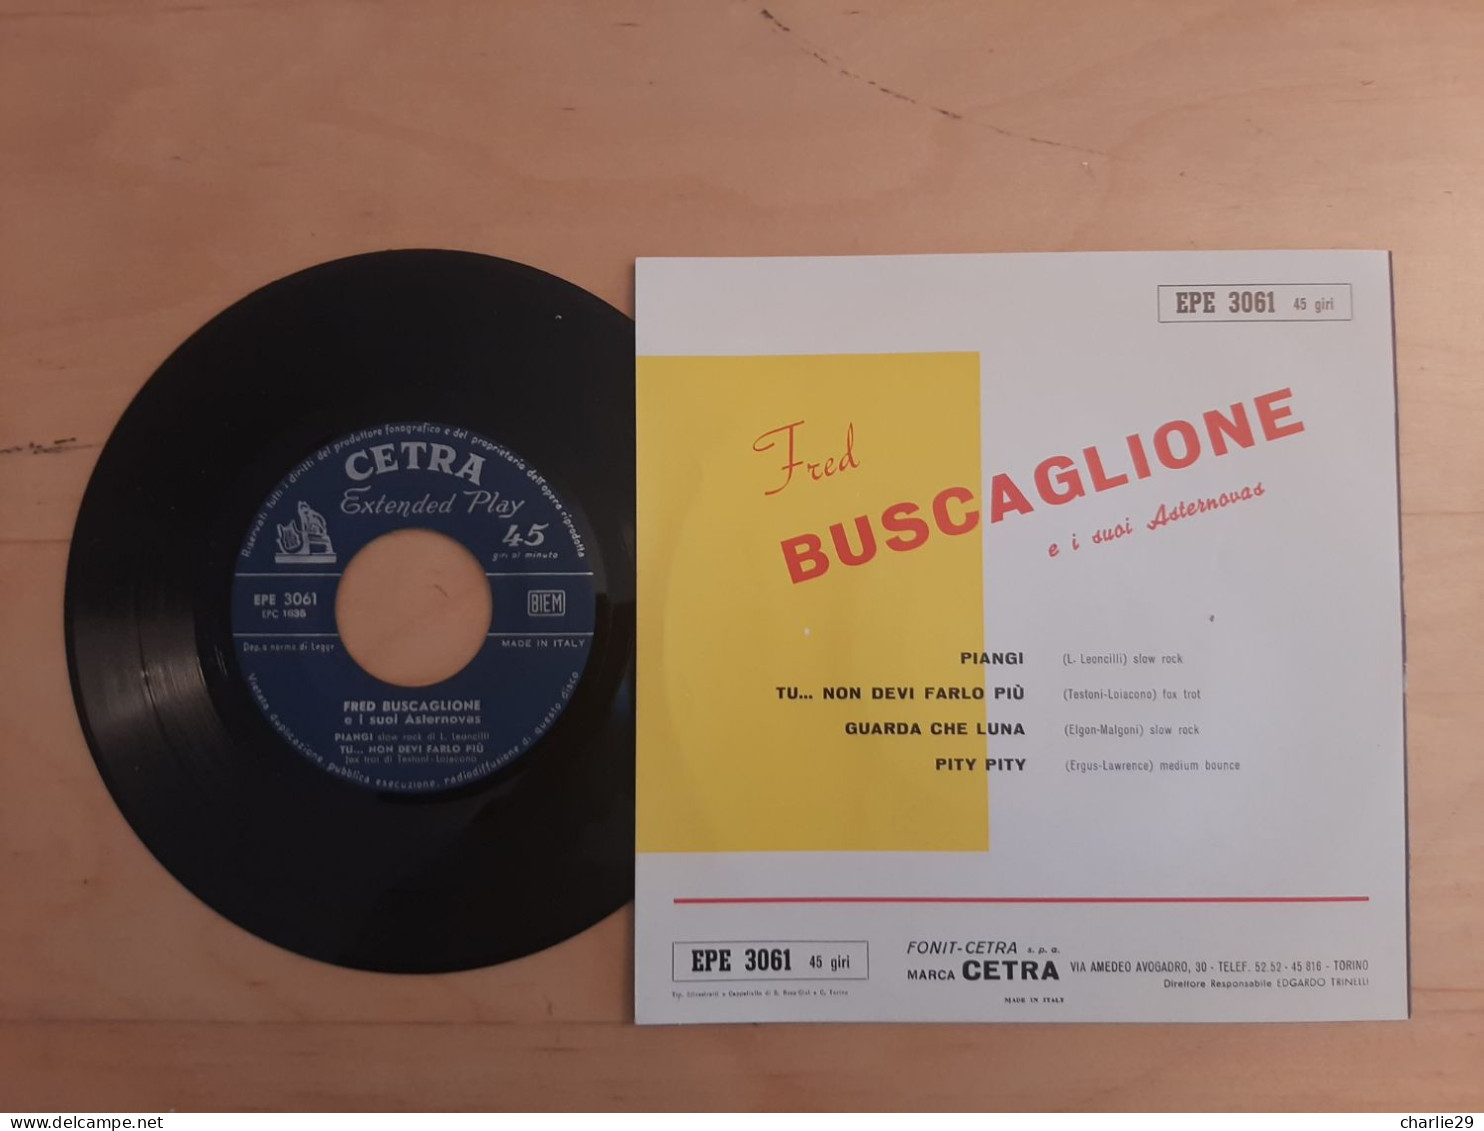 Fred Buscaglione E I Suoi Asternovas - Vinile 45 Giri - Anno 1959 - Otros - Canción Italiana